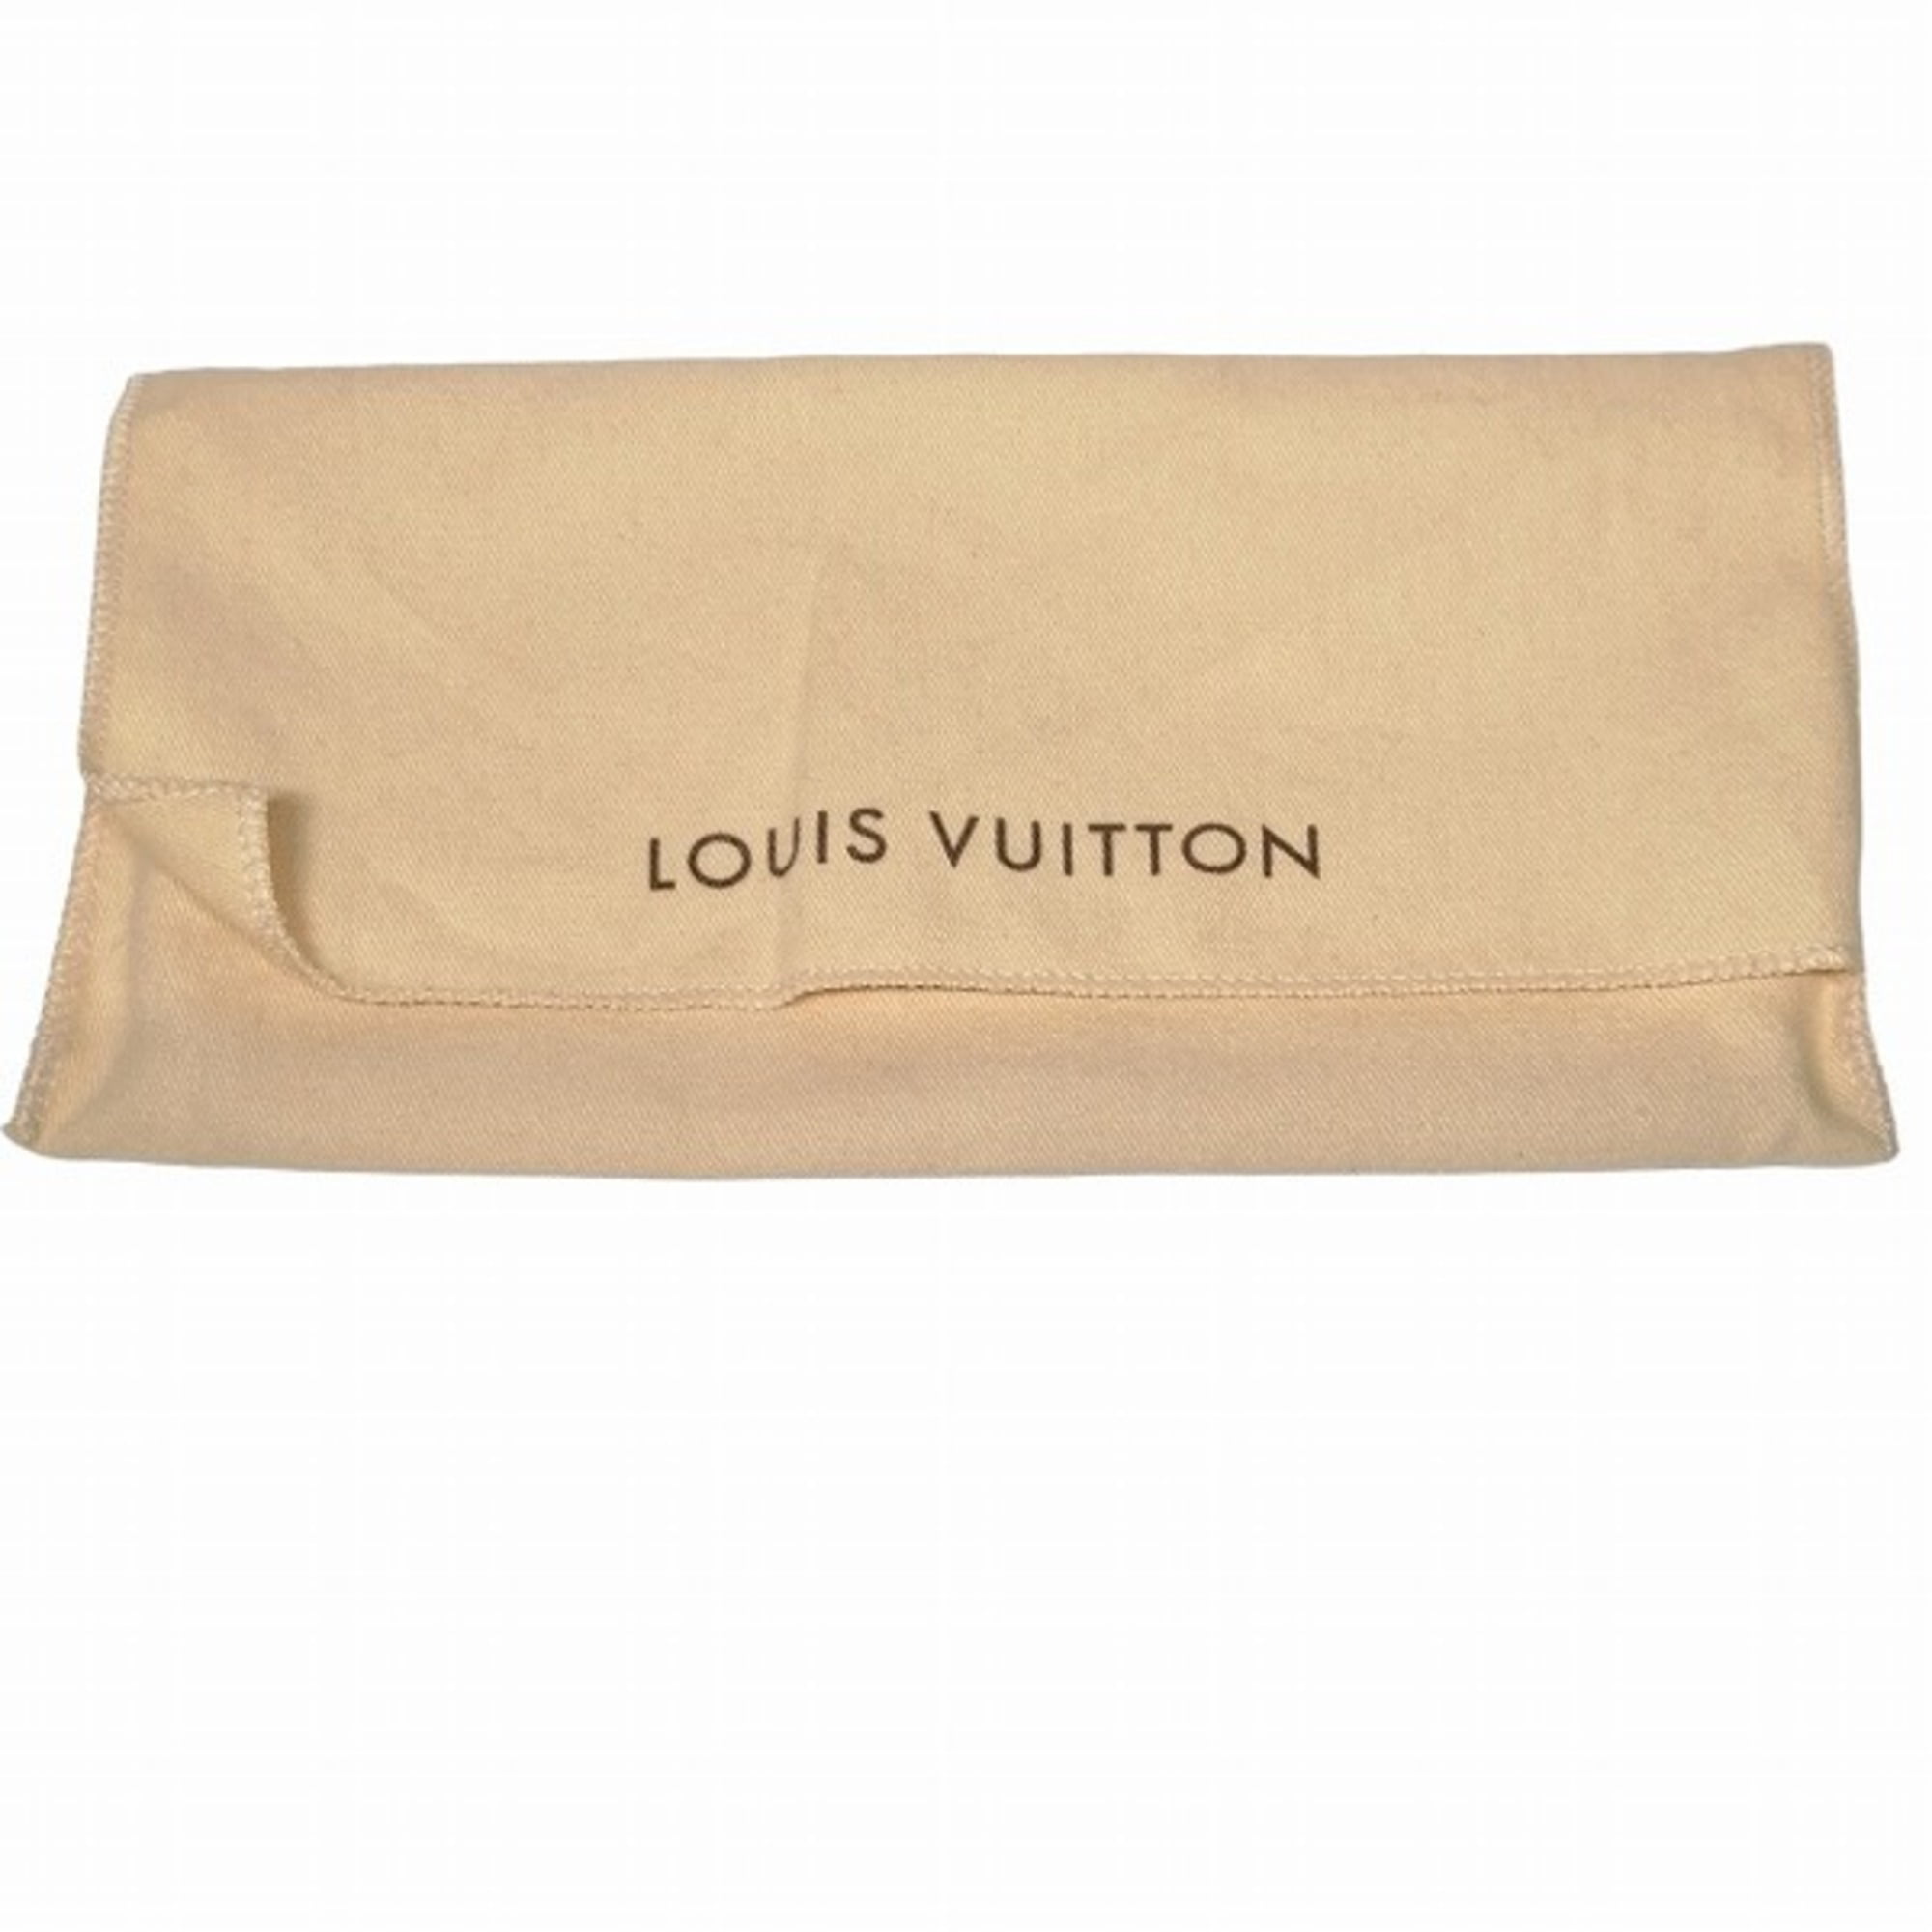 Authenticated used Louis Vuitton W Wallet Monogram Porte Monet Bie Cult Credit M61652 Double Women's Louis Vuitton, Adult Unisex, Size: (HxWxD): 10cm